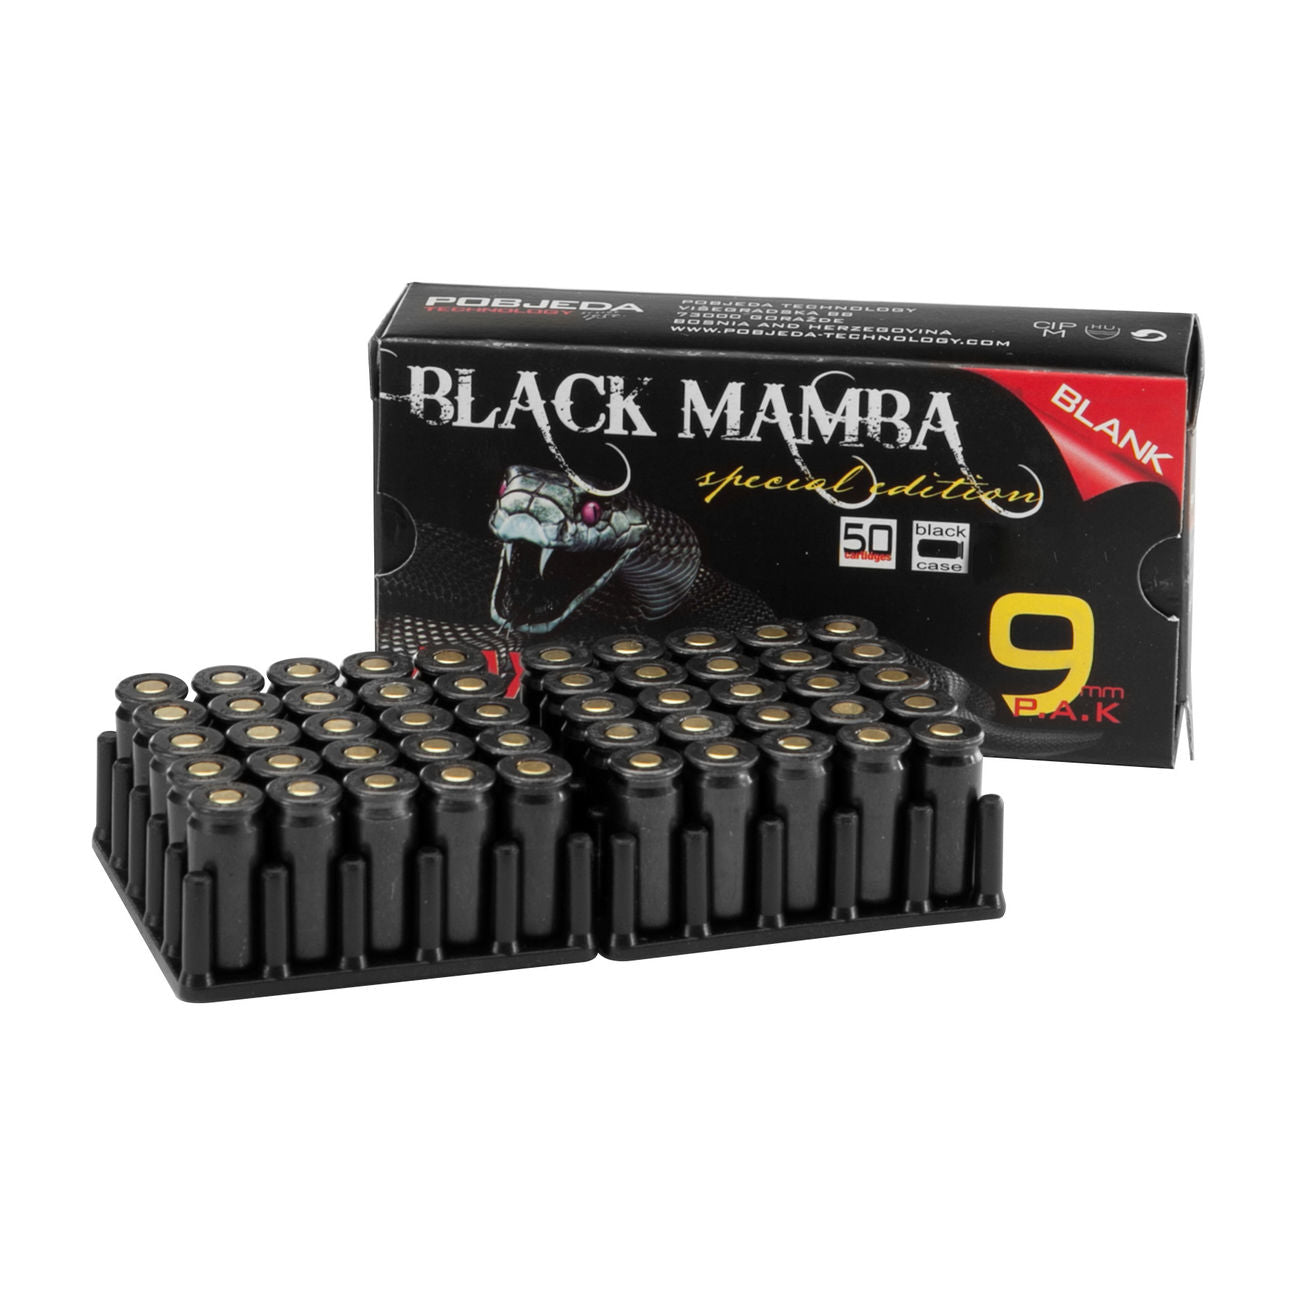 9mm BLACK MAMBA P.A.K